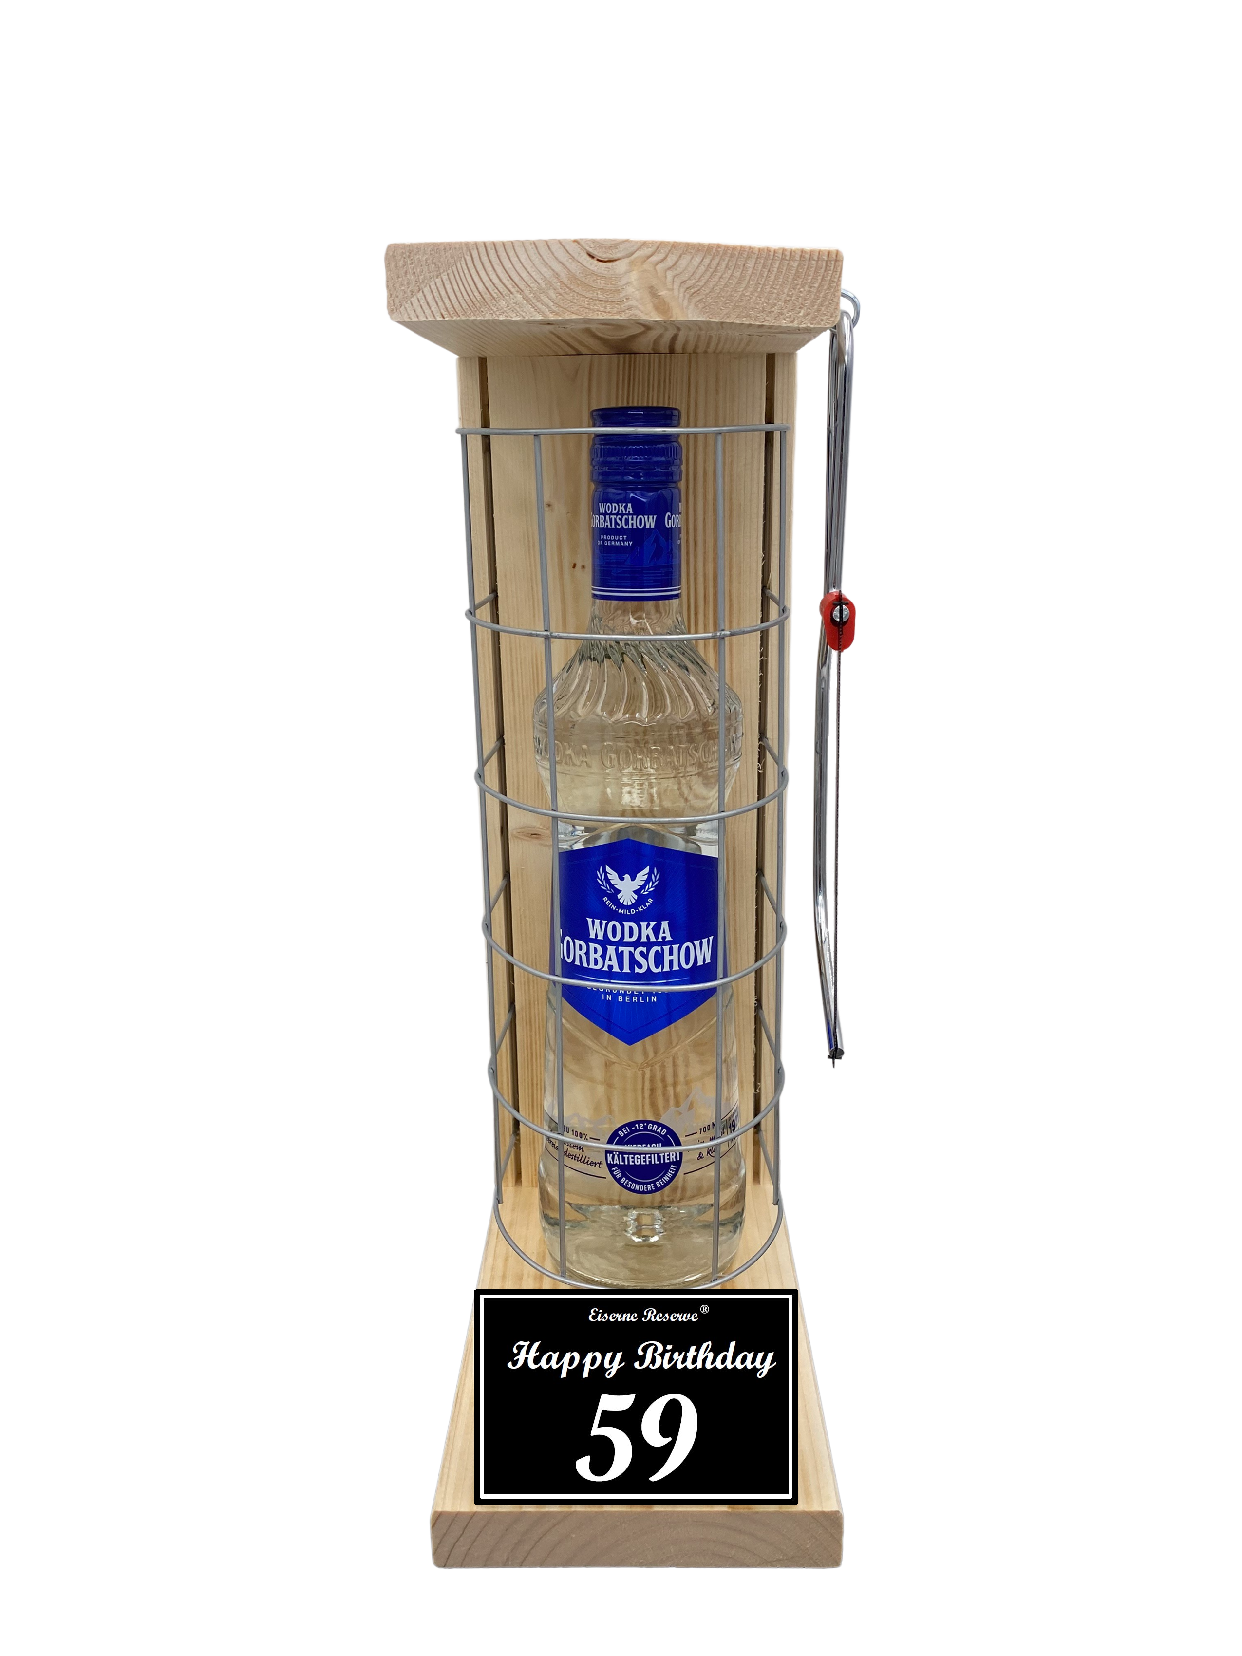 Wodka Geschenk zum 59 Geburtstag - Eiserne Reserve Gitterkäfig